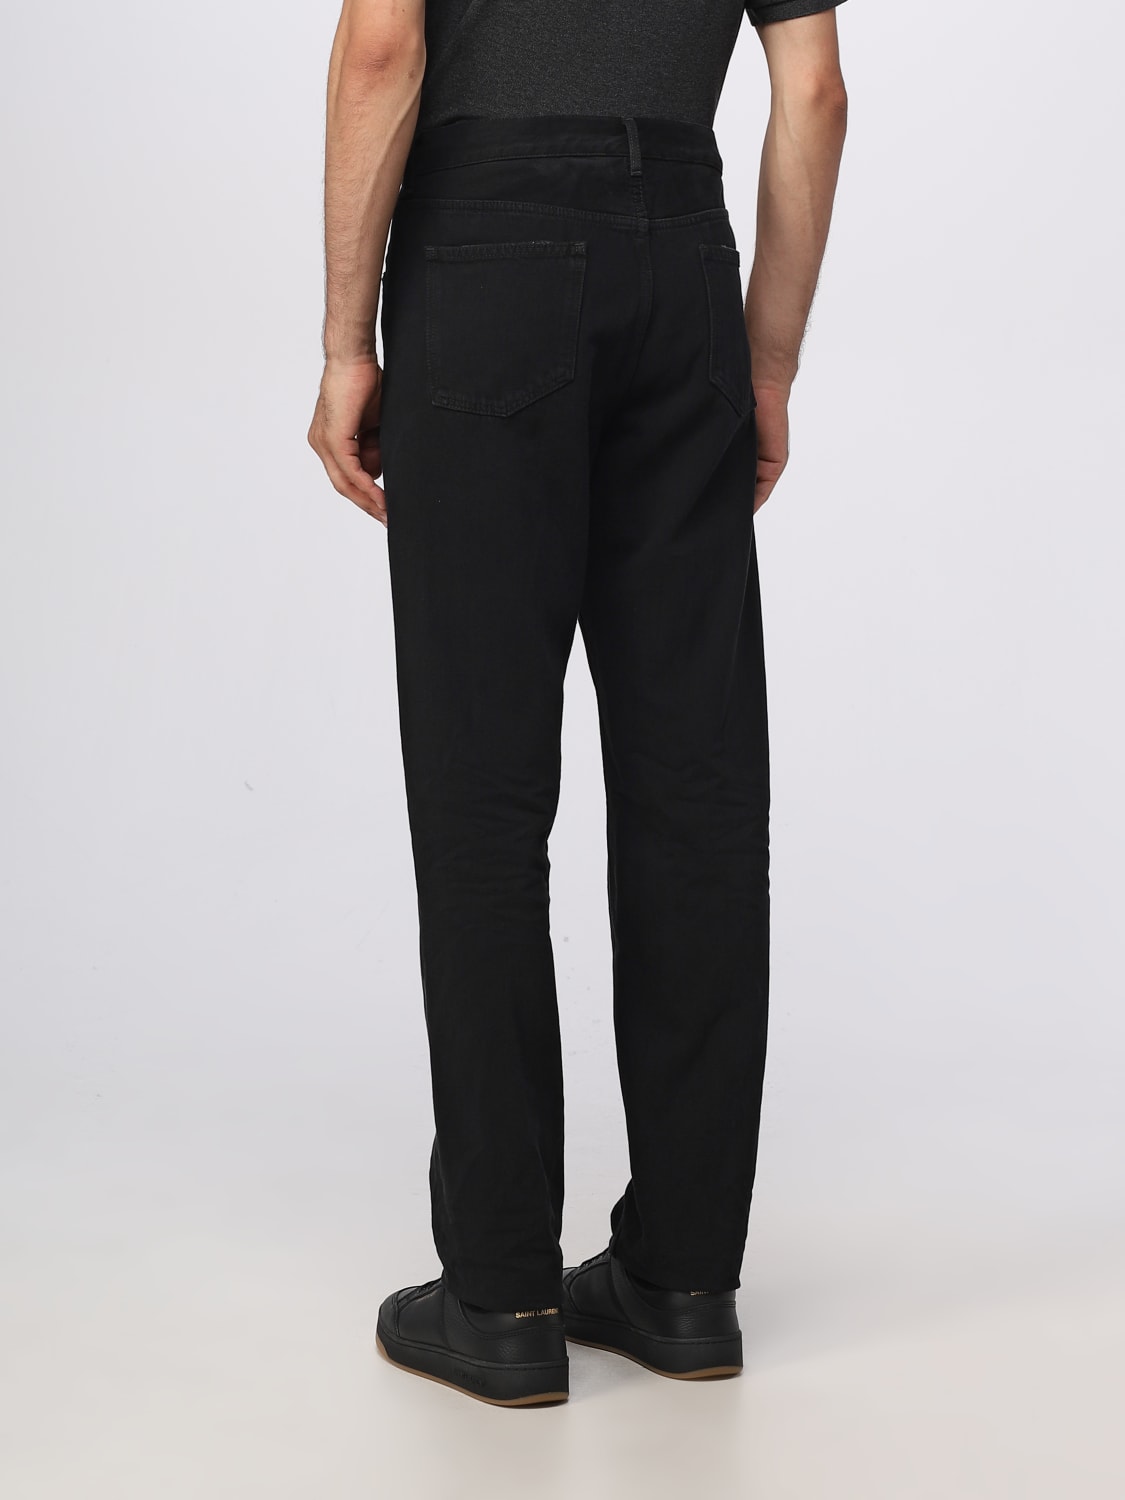 SAINT LAURENT: jeans for man - Black | Saint Laurent jeans 757190Y16PD ...